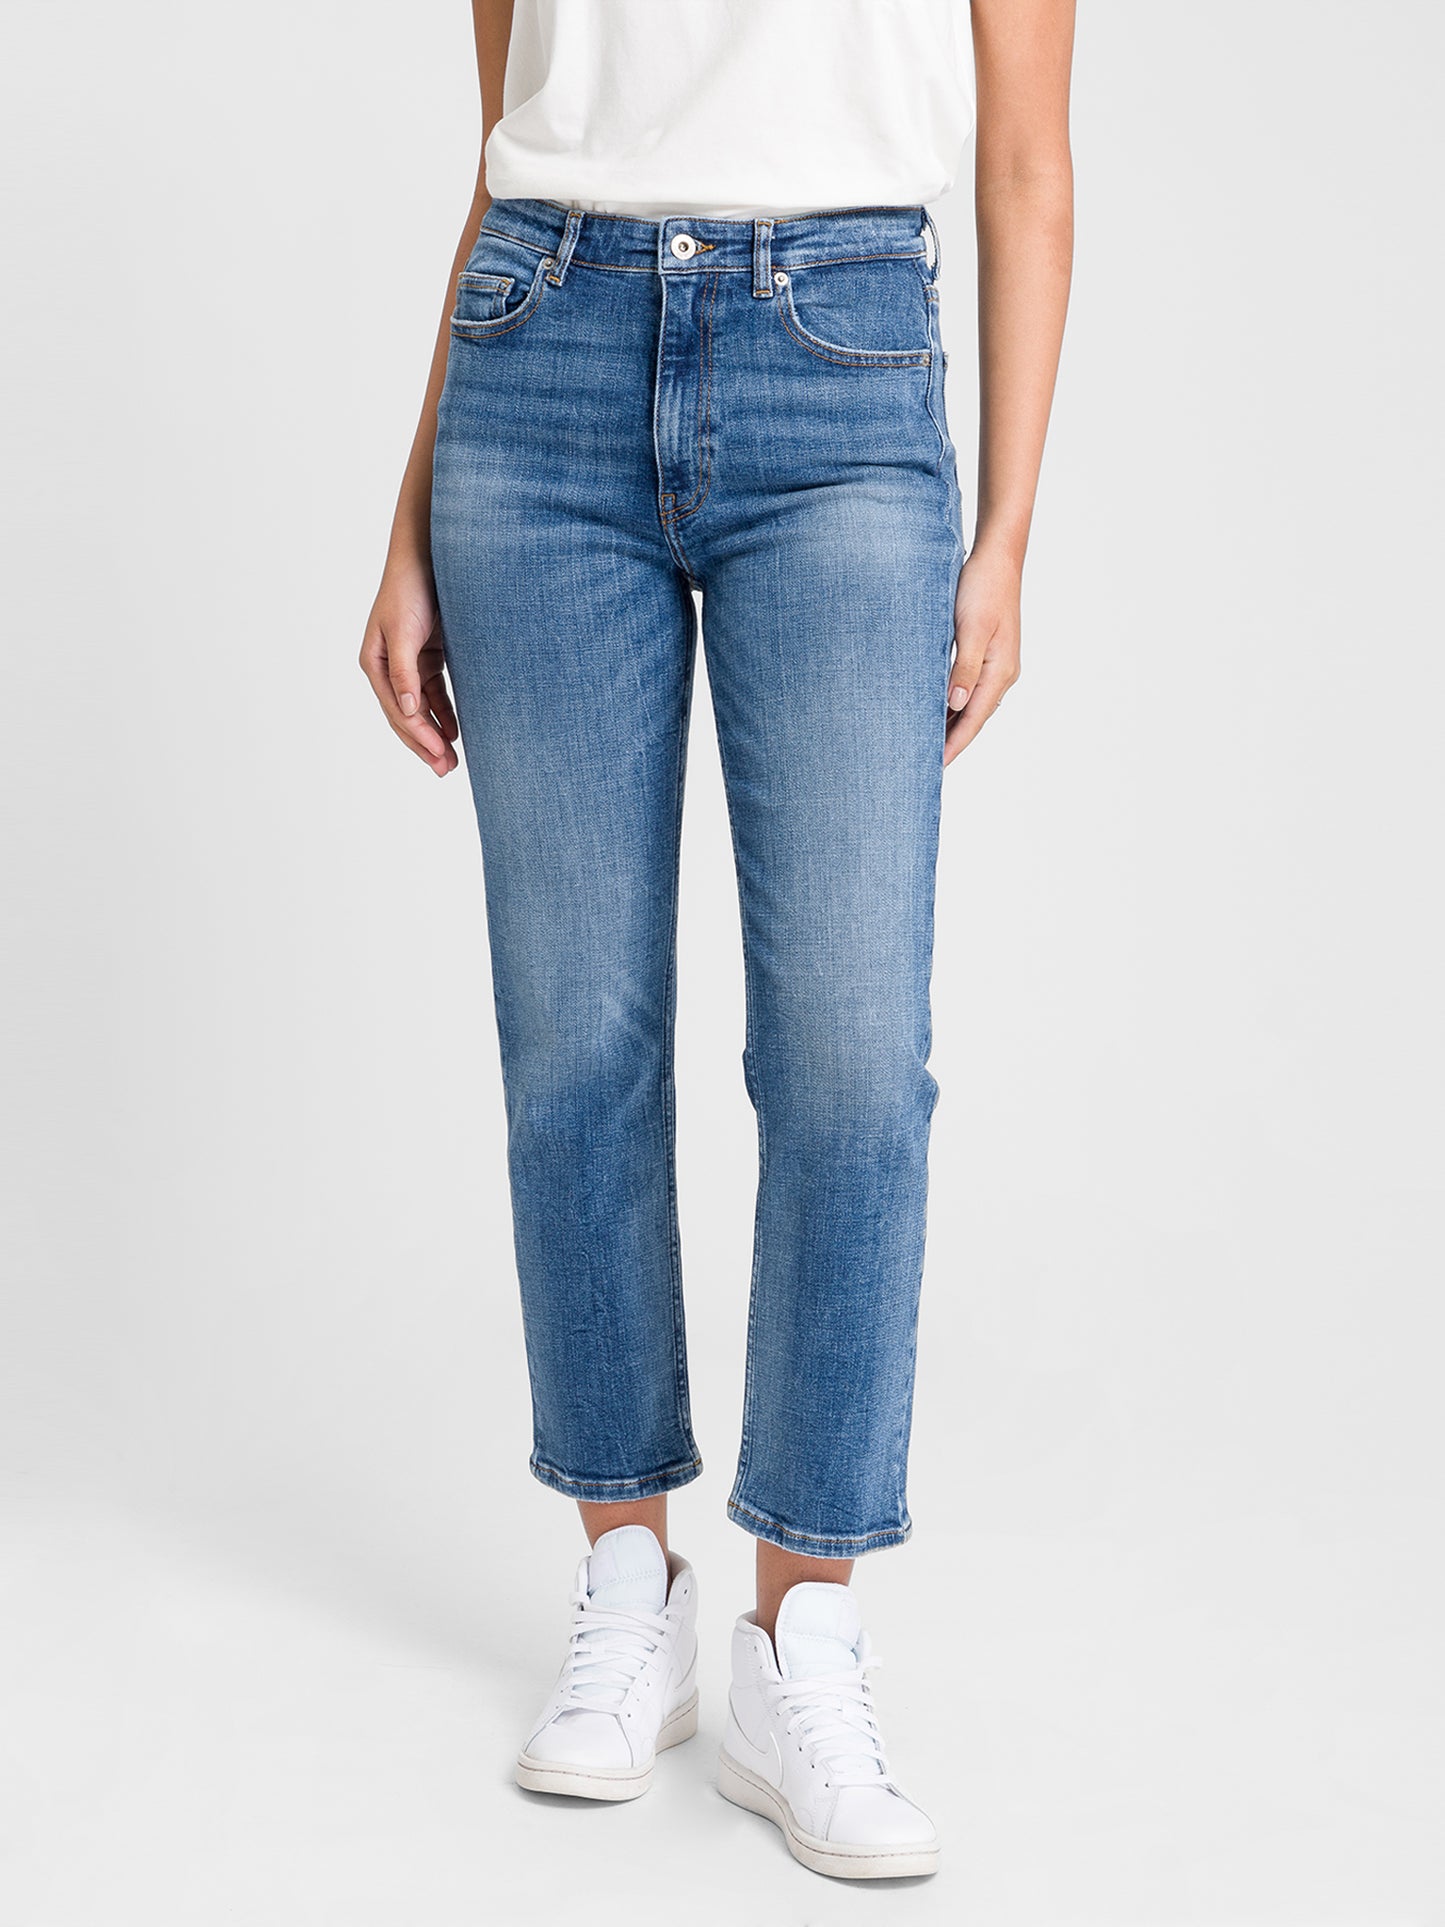 Marisa women's jeans regular fit high waist straight leg medium blue